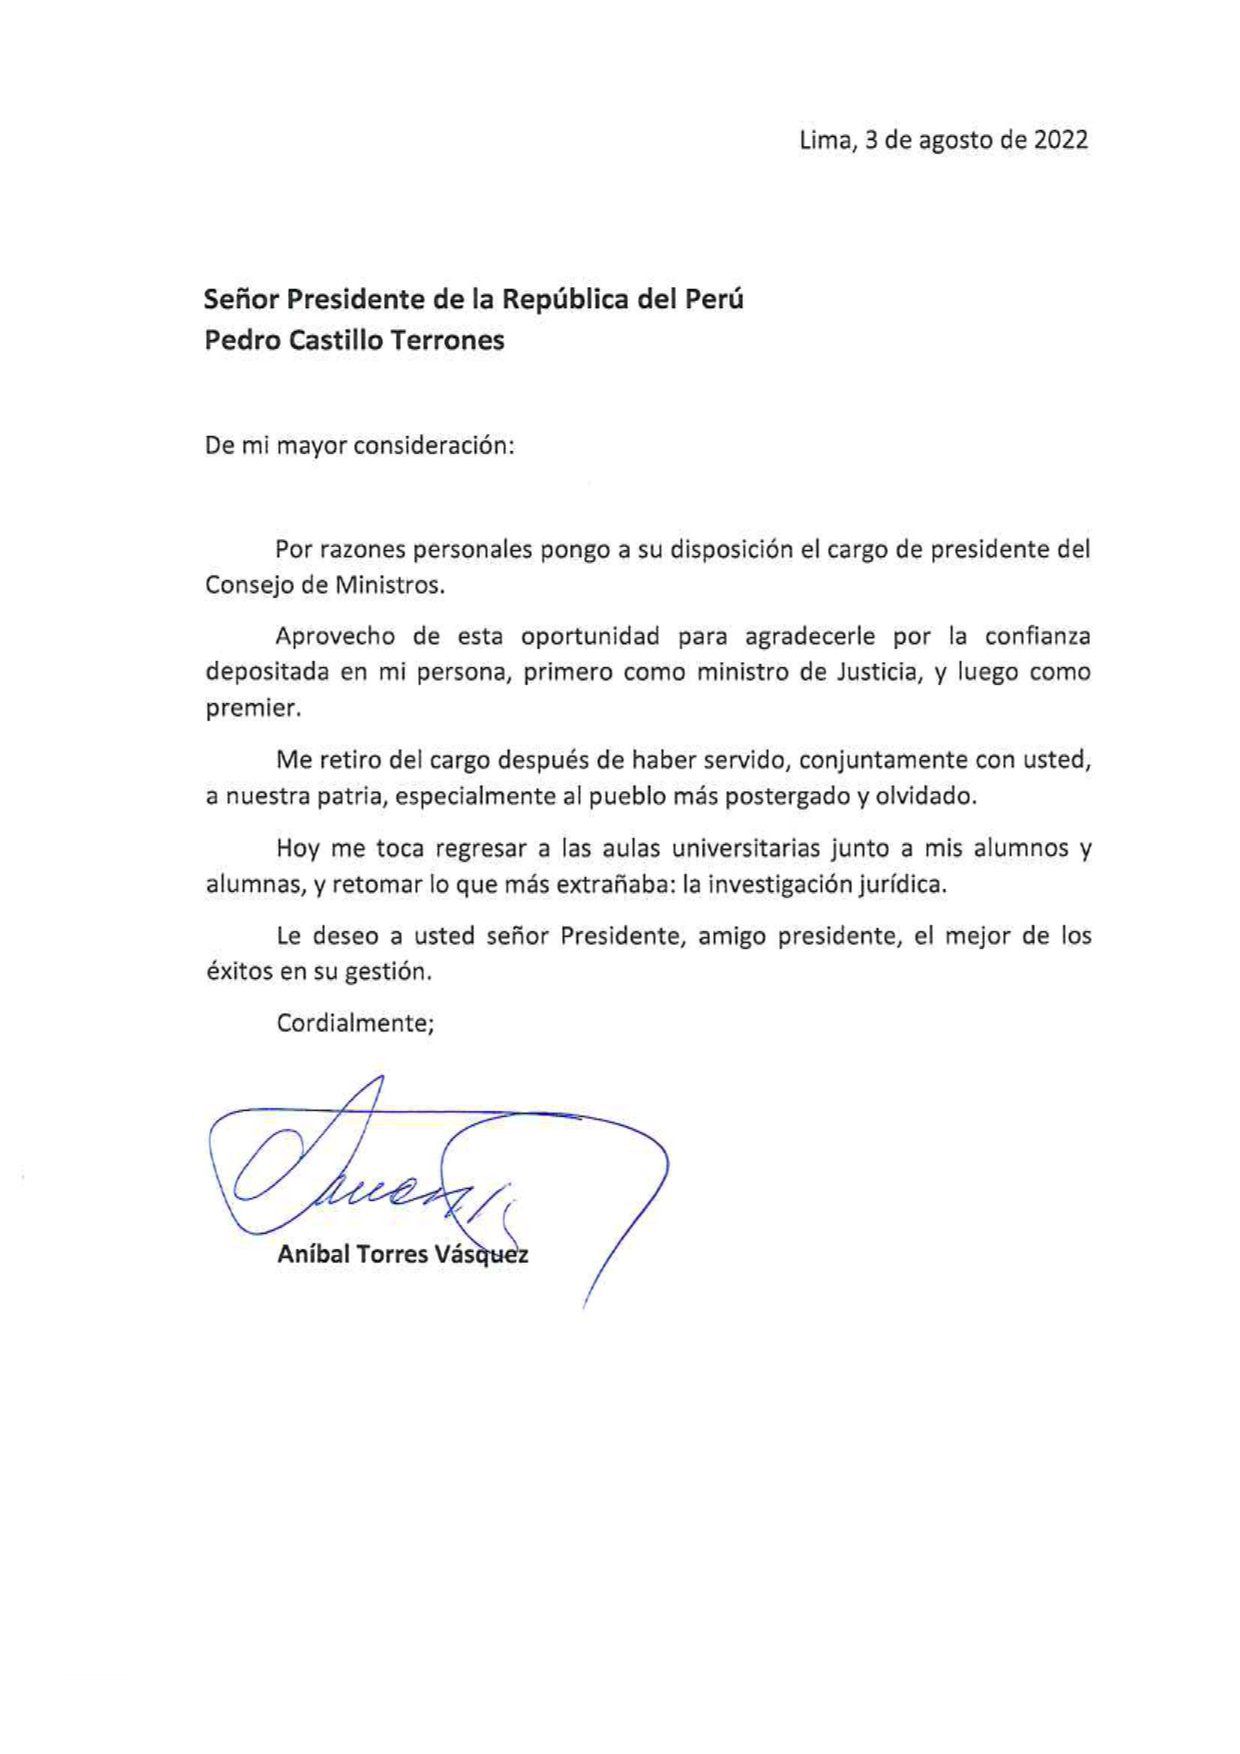 Aníbal Torres presentó carta de renuncia al cargo de presidente del Consejo de Ministros